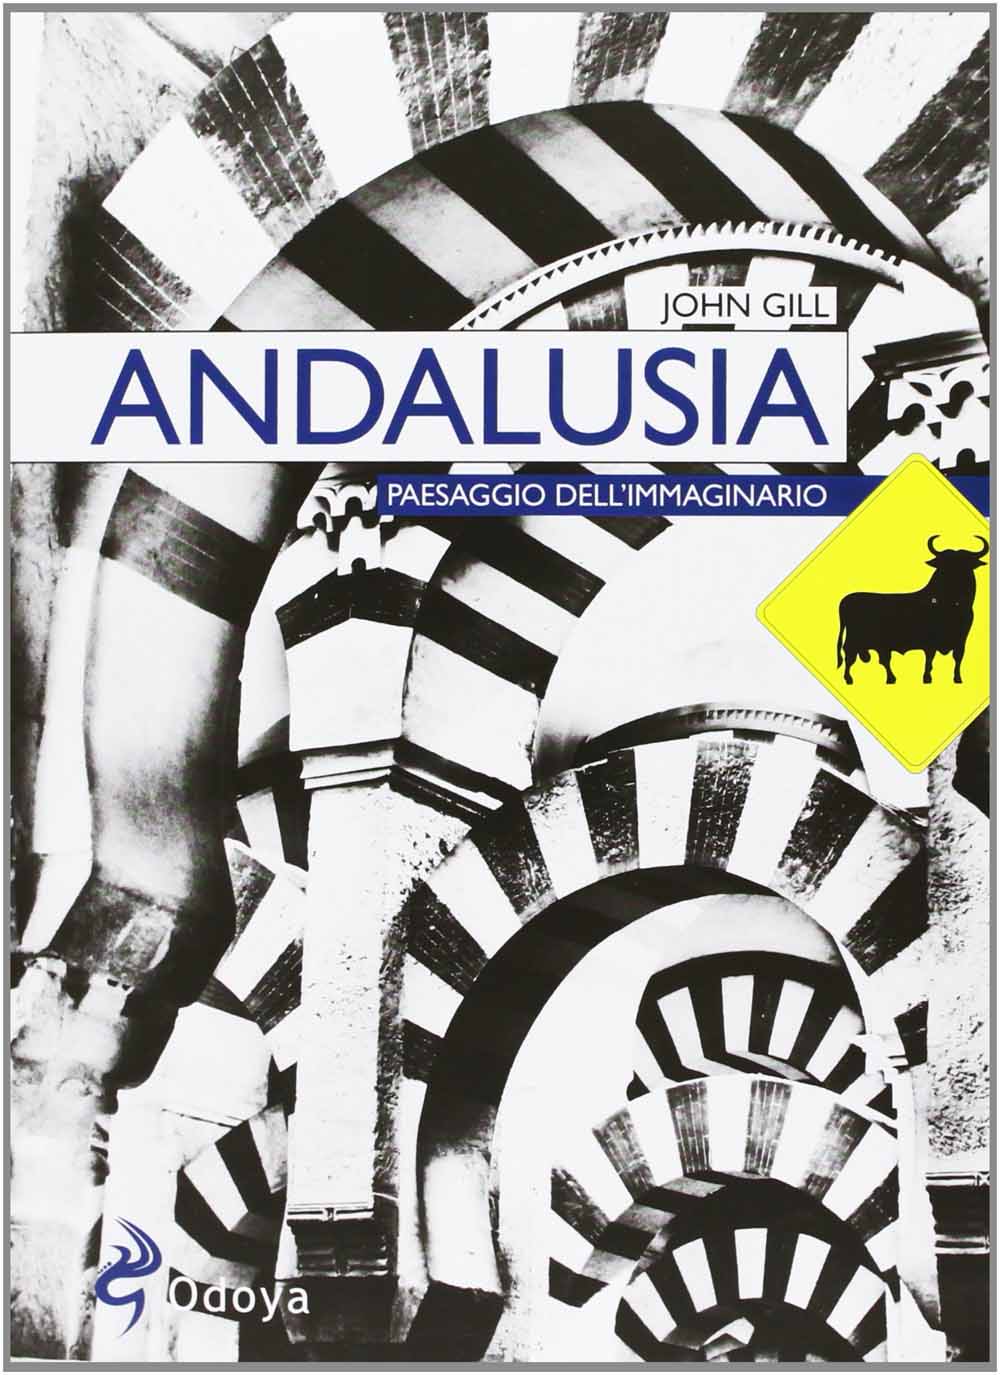 Libri John Gill - Andalusia. Paesaggio Dell'Immaginario NUOVO SIGILLATO, EDIZIONE DEL 28/03/2013 SUBITO DISPONIBILE